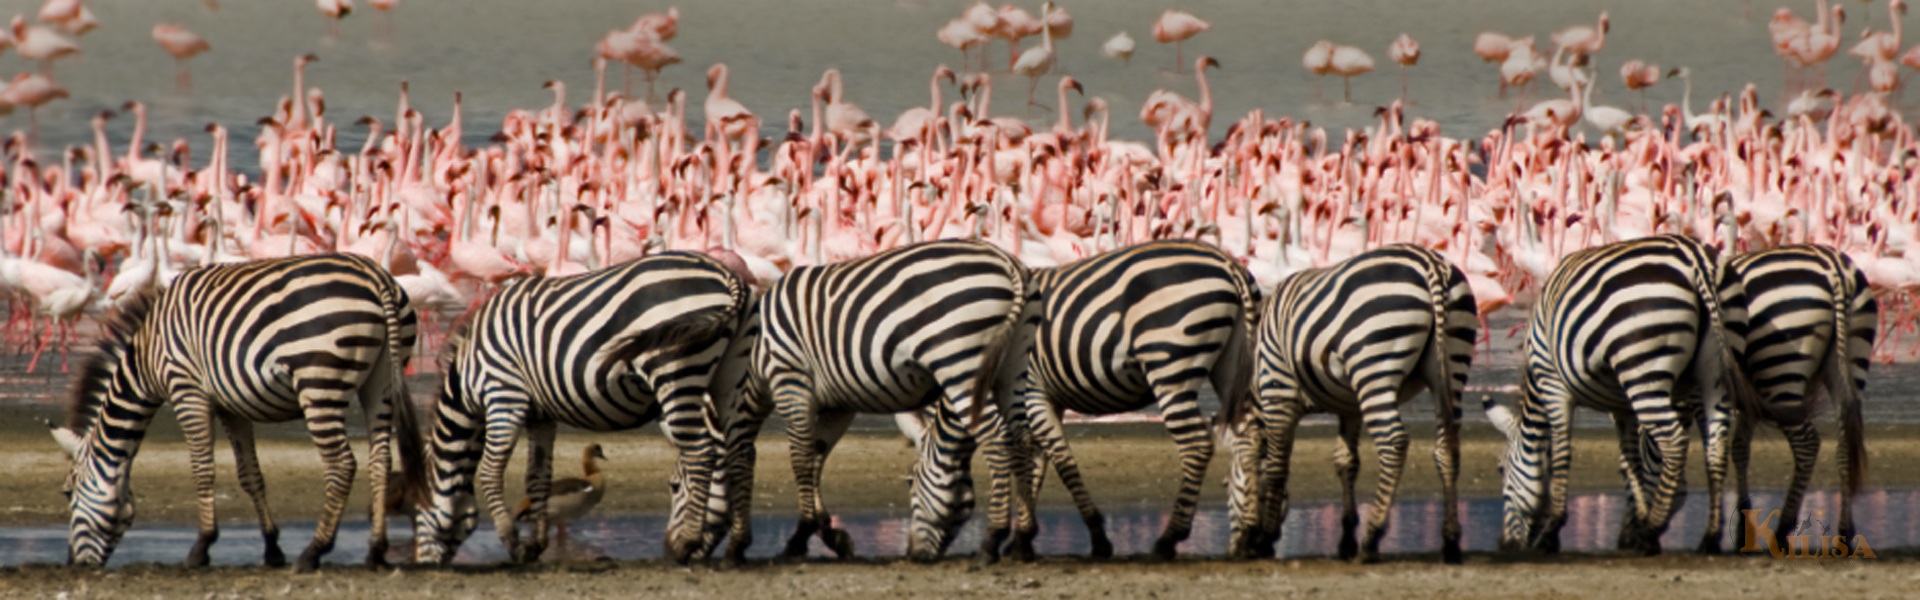 Tanzania Wildlife Safari (Lake Manyara / Ngorongoro Crater)